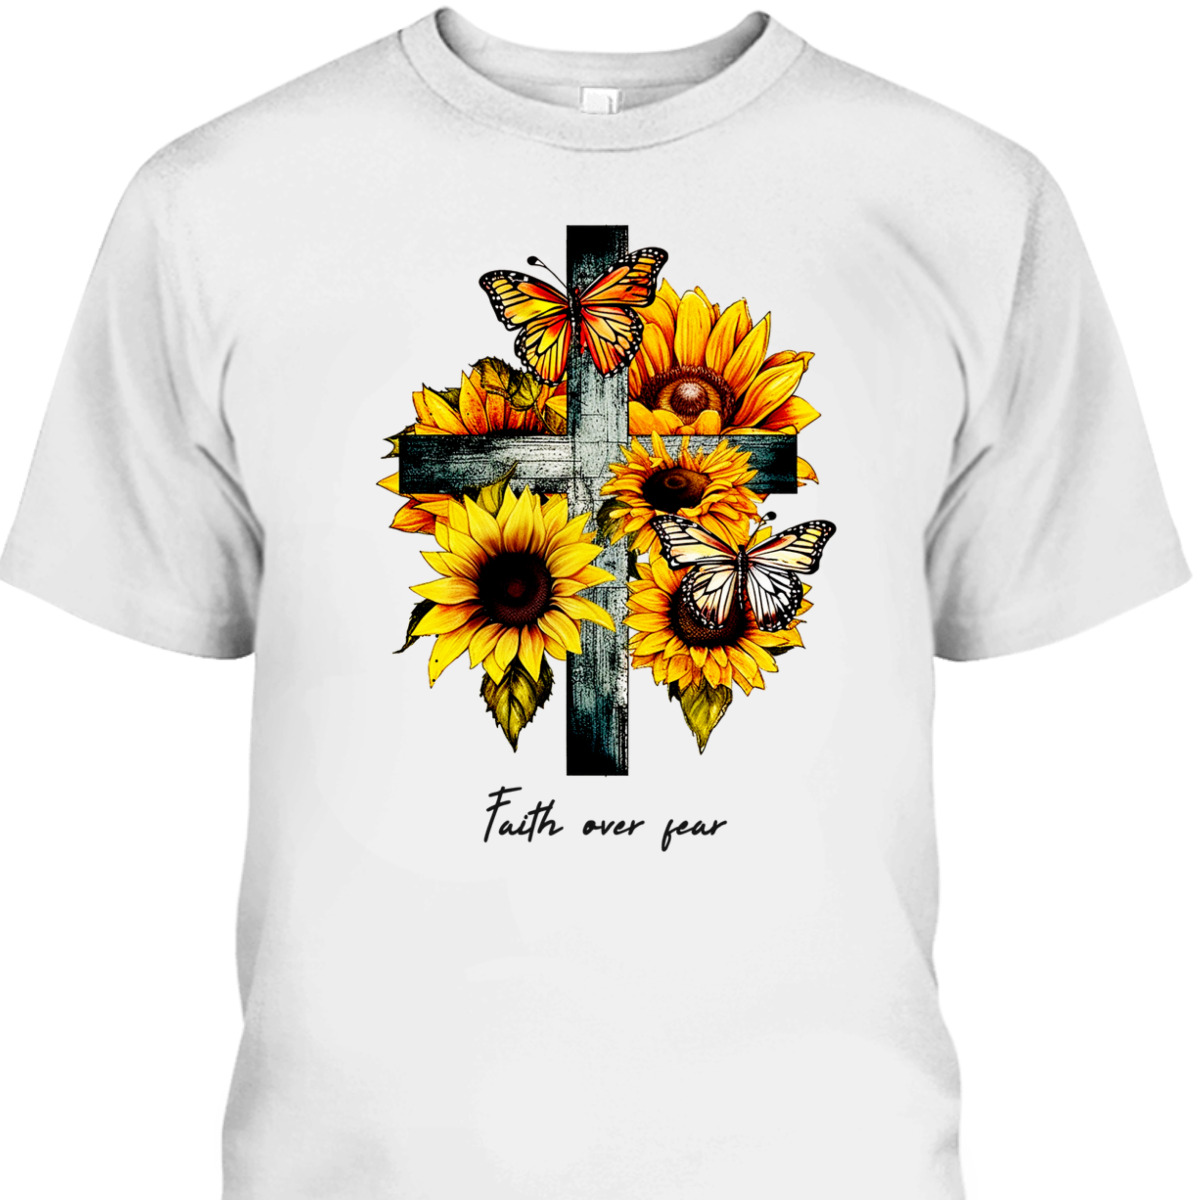 Faith Over Fear T-Shirt Christian Cross Sunflowers Butterflies